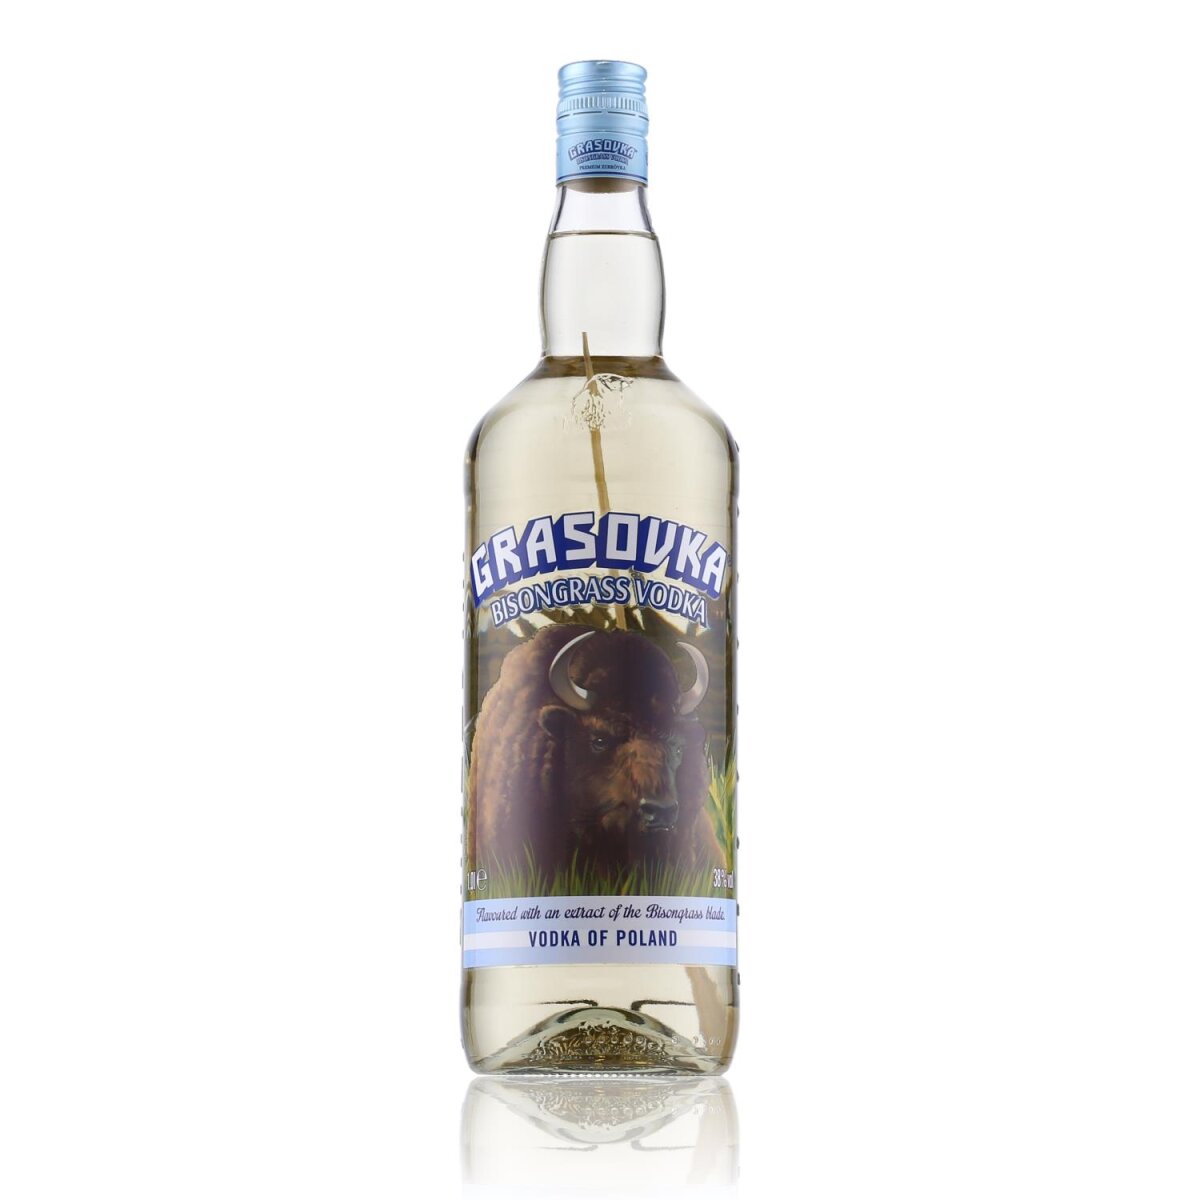 Grasovka Bisongrass Vodka 38% Vol. 1l, 16,89 €